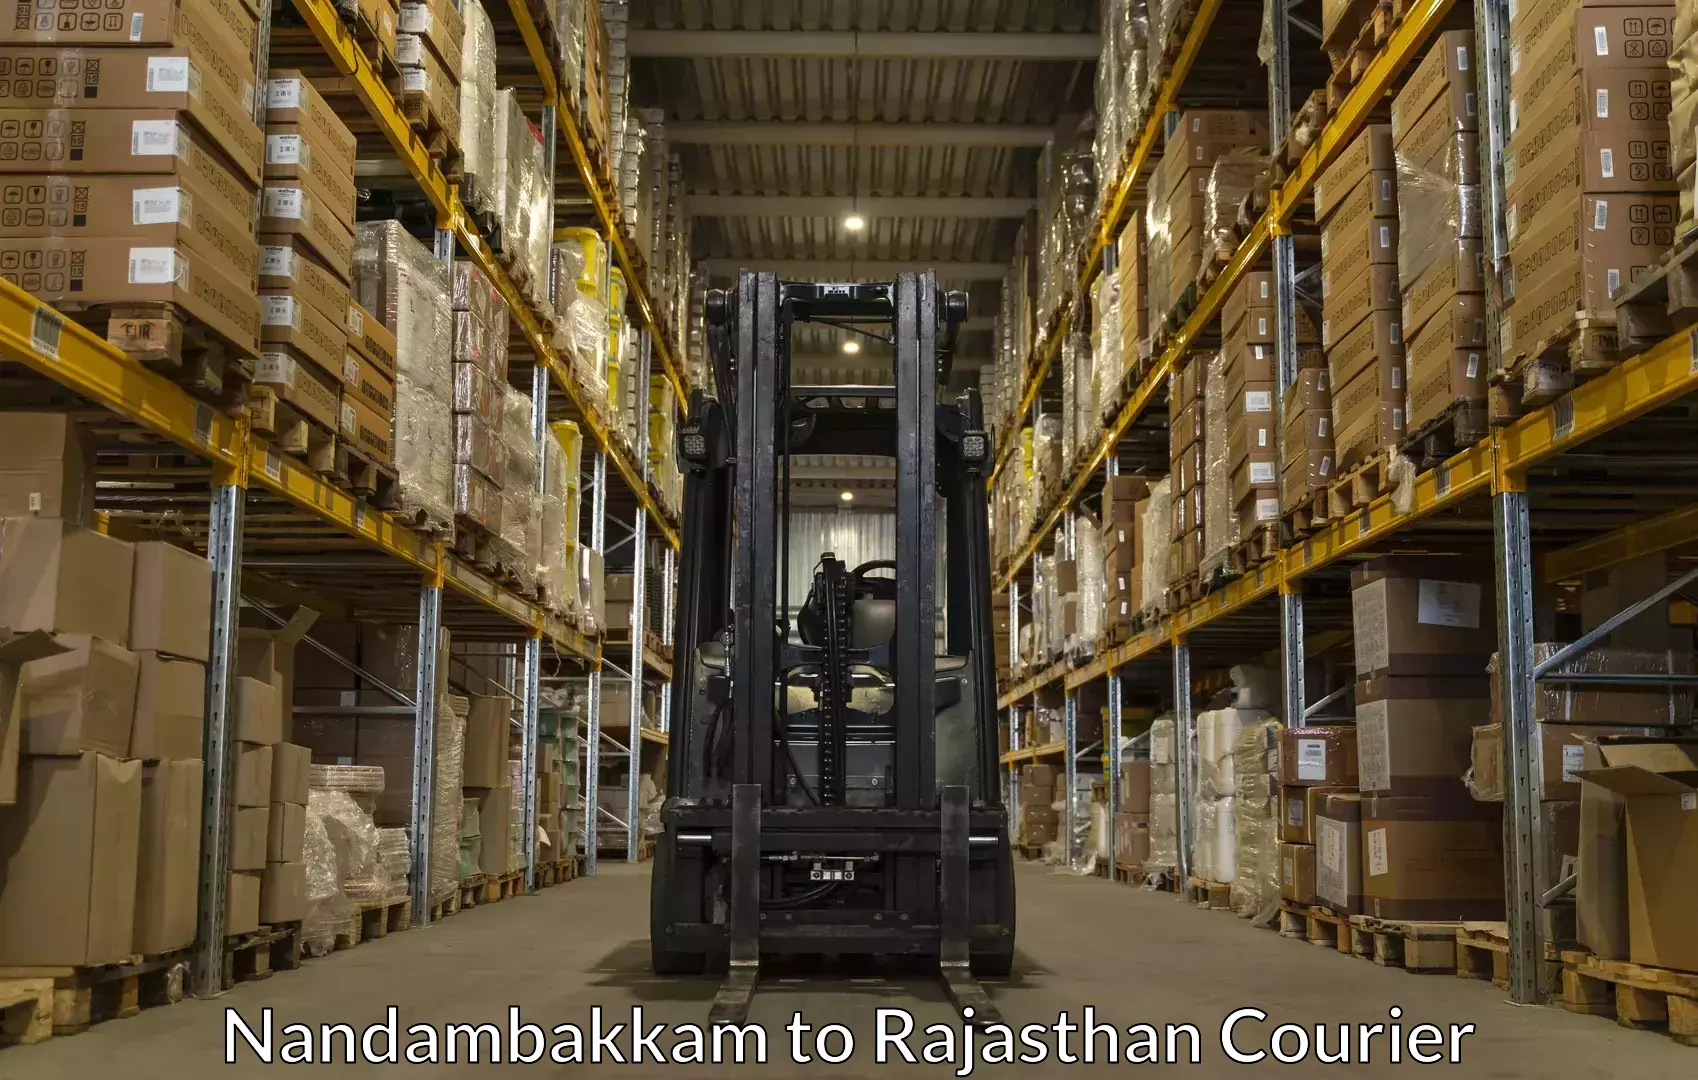 Baggage courier logistics Nandambakkam to Rajasthan